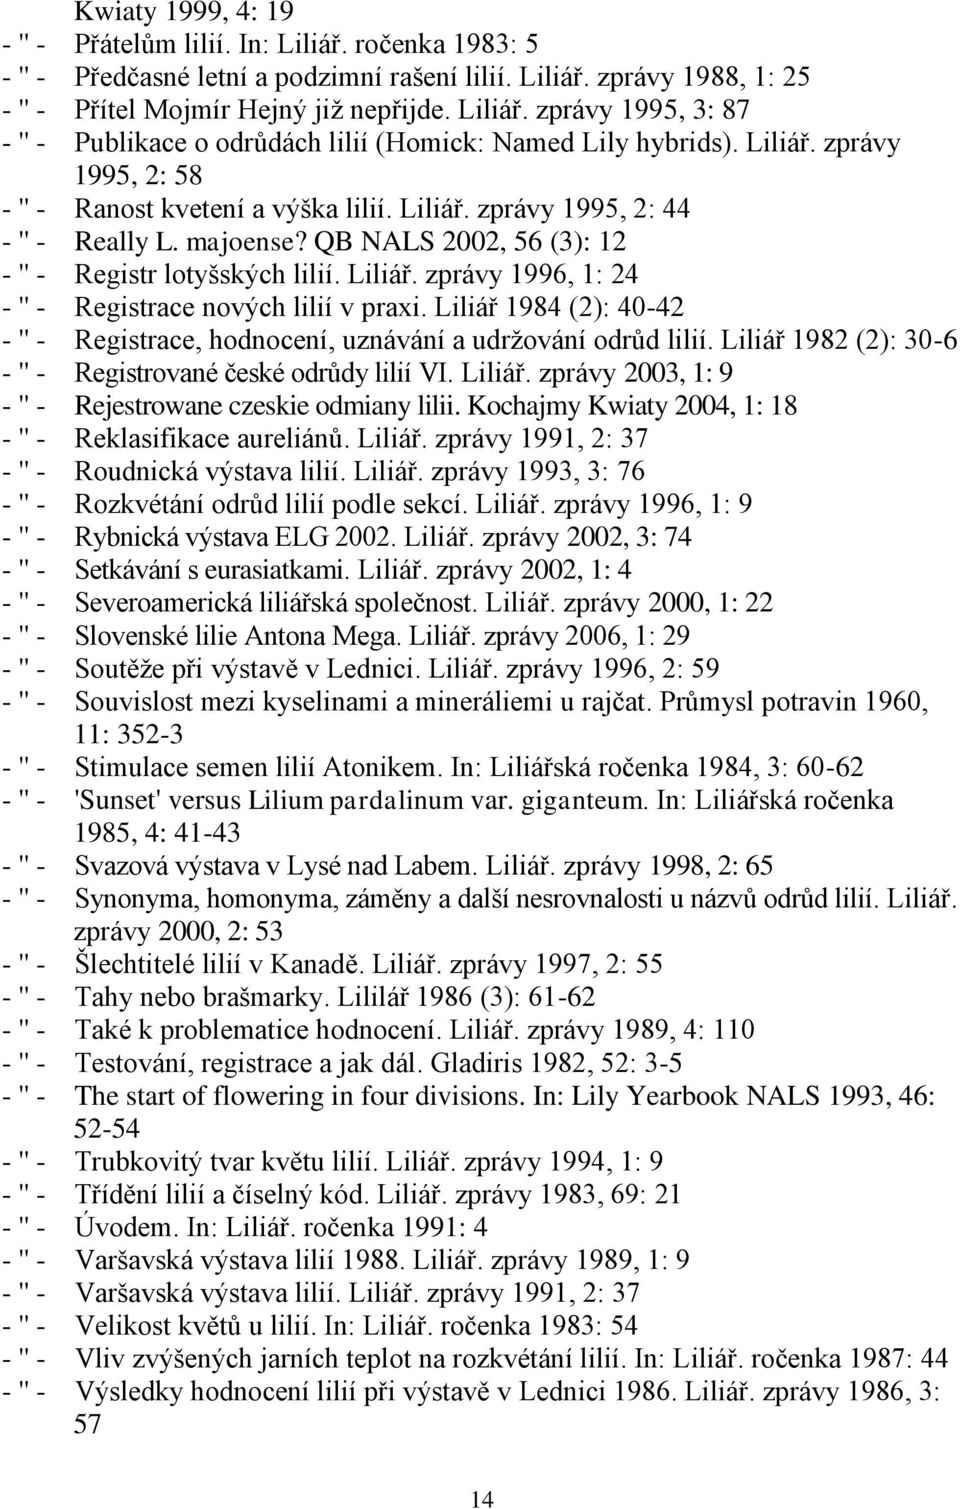 Liliář 1984 (2): 40-42 - '' - Registrace, hodnocení, uznávání a udrţování odrůd lilií. Liliář 1982 (2): 30-6 - '' - Registrované české odrůdy lilií VI. Liliář. zprávy 2003, 1: 9 - '' - Rejestrowane czeskie odmiany lilii.